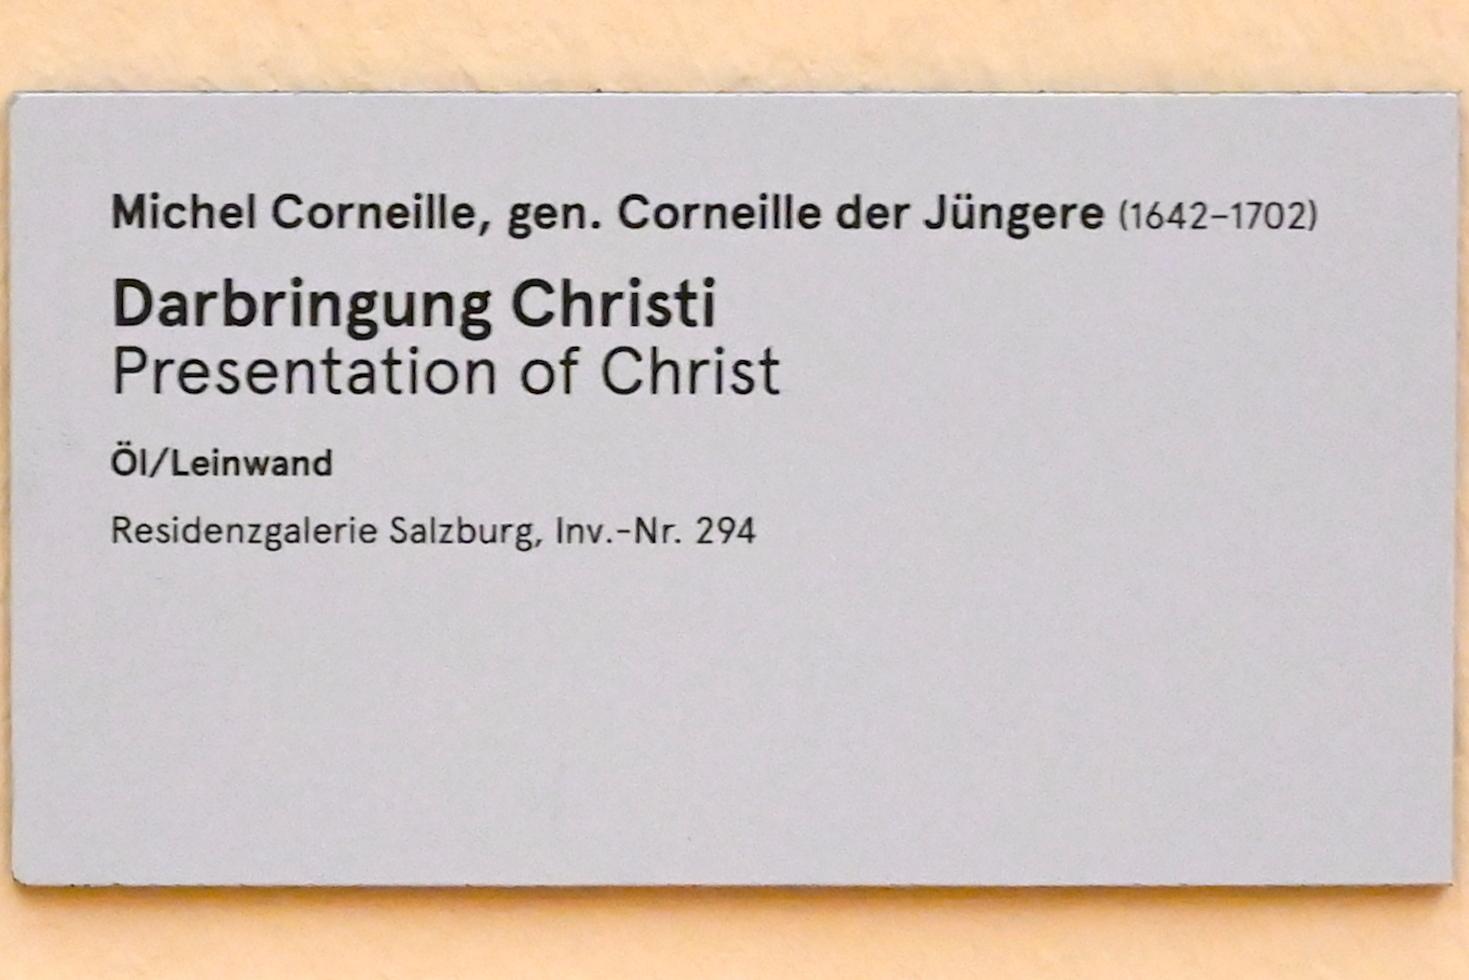 Michel Corneille der Jüngere (1690), Darbringung Christi, Salzburg, Salzburger Residenz, Residenzgalerie, Undatiert, Bild 2/2